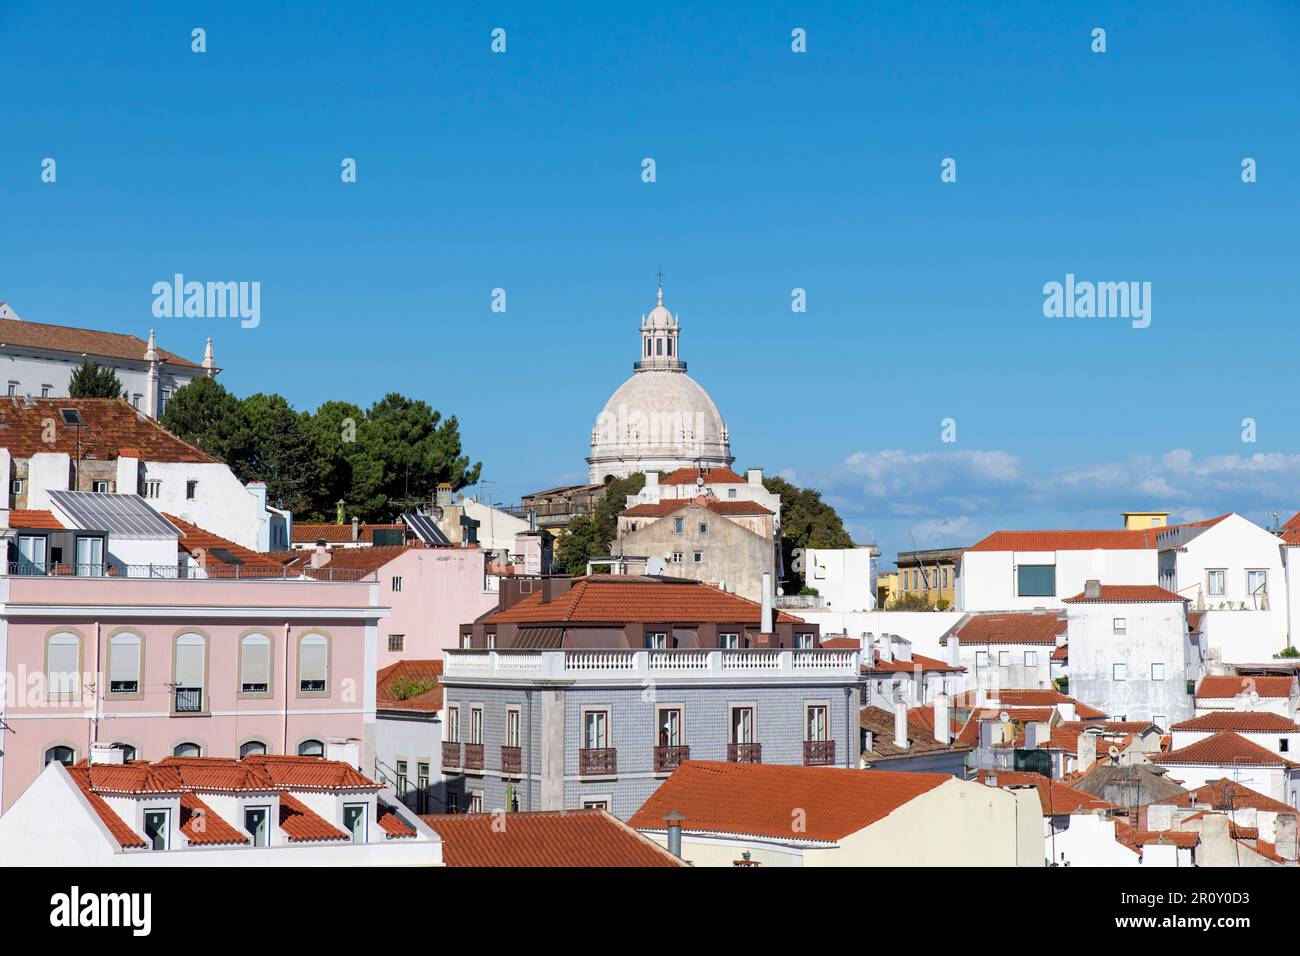 Vista sui tetti colorati del quartiere Alfama di Lisbona, Portogallo, con al centro la Chiesa di Santa Engrácia (Igreja de Santa Engrácia) Foto Stock